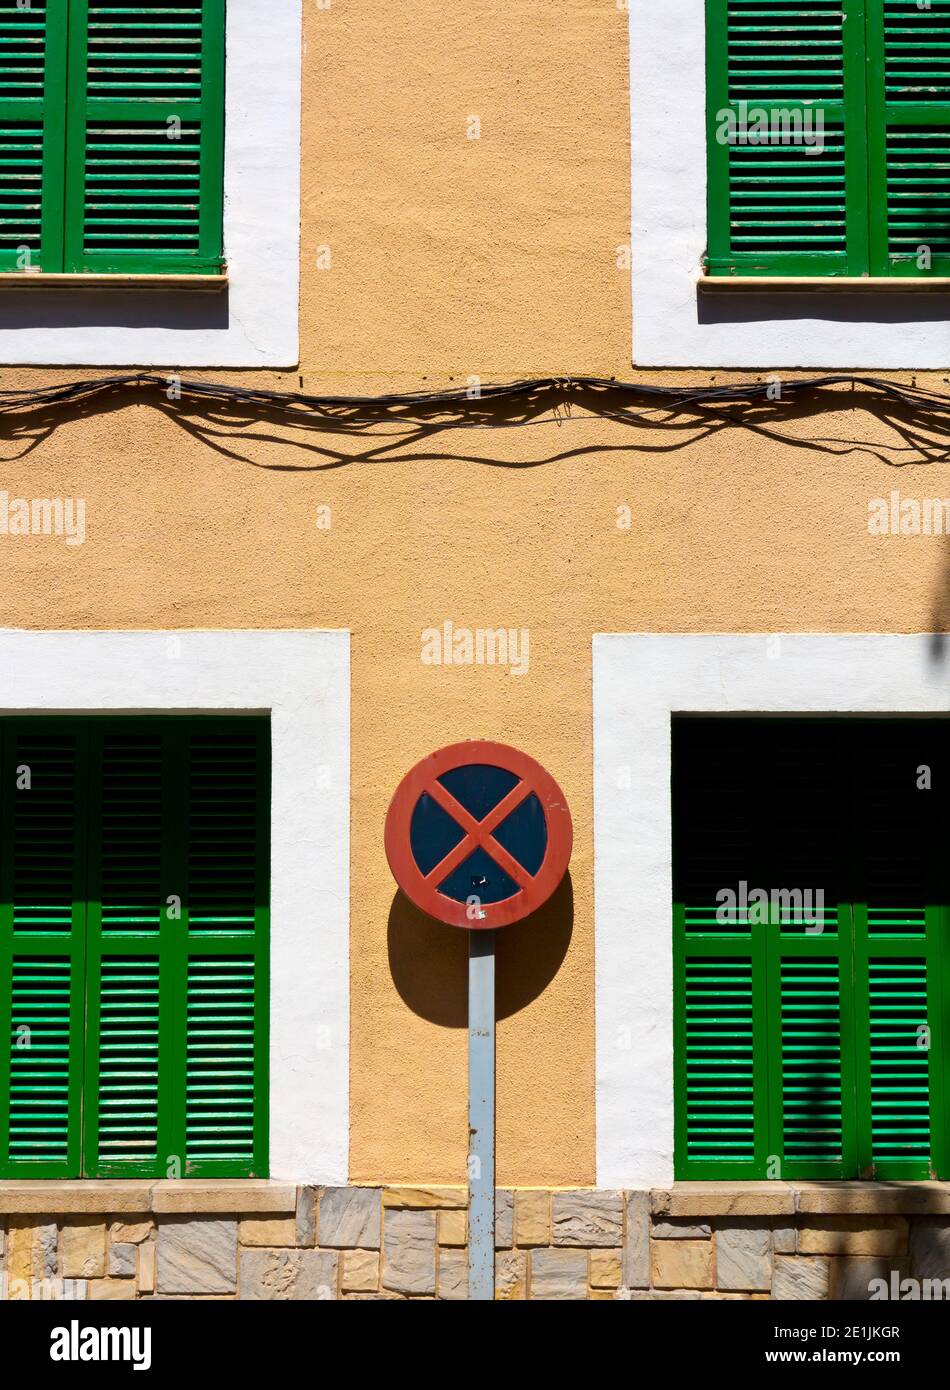 No hay señal de parada o de aparcamiento en una calle estrecha típica de Soller un pueblo en la costa noroeste de Mallorca en las Islas Baleares de España. Foto de stock